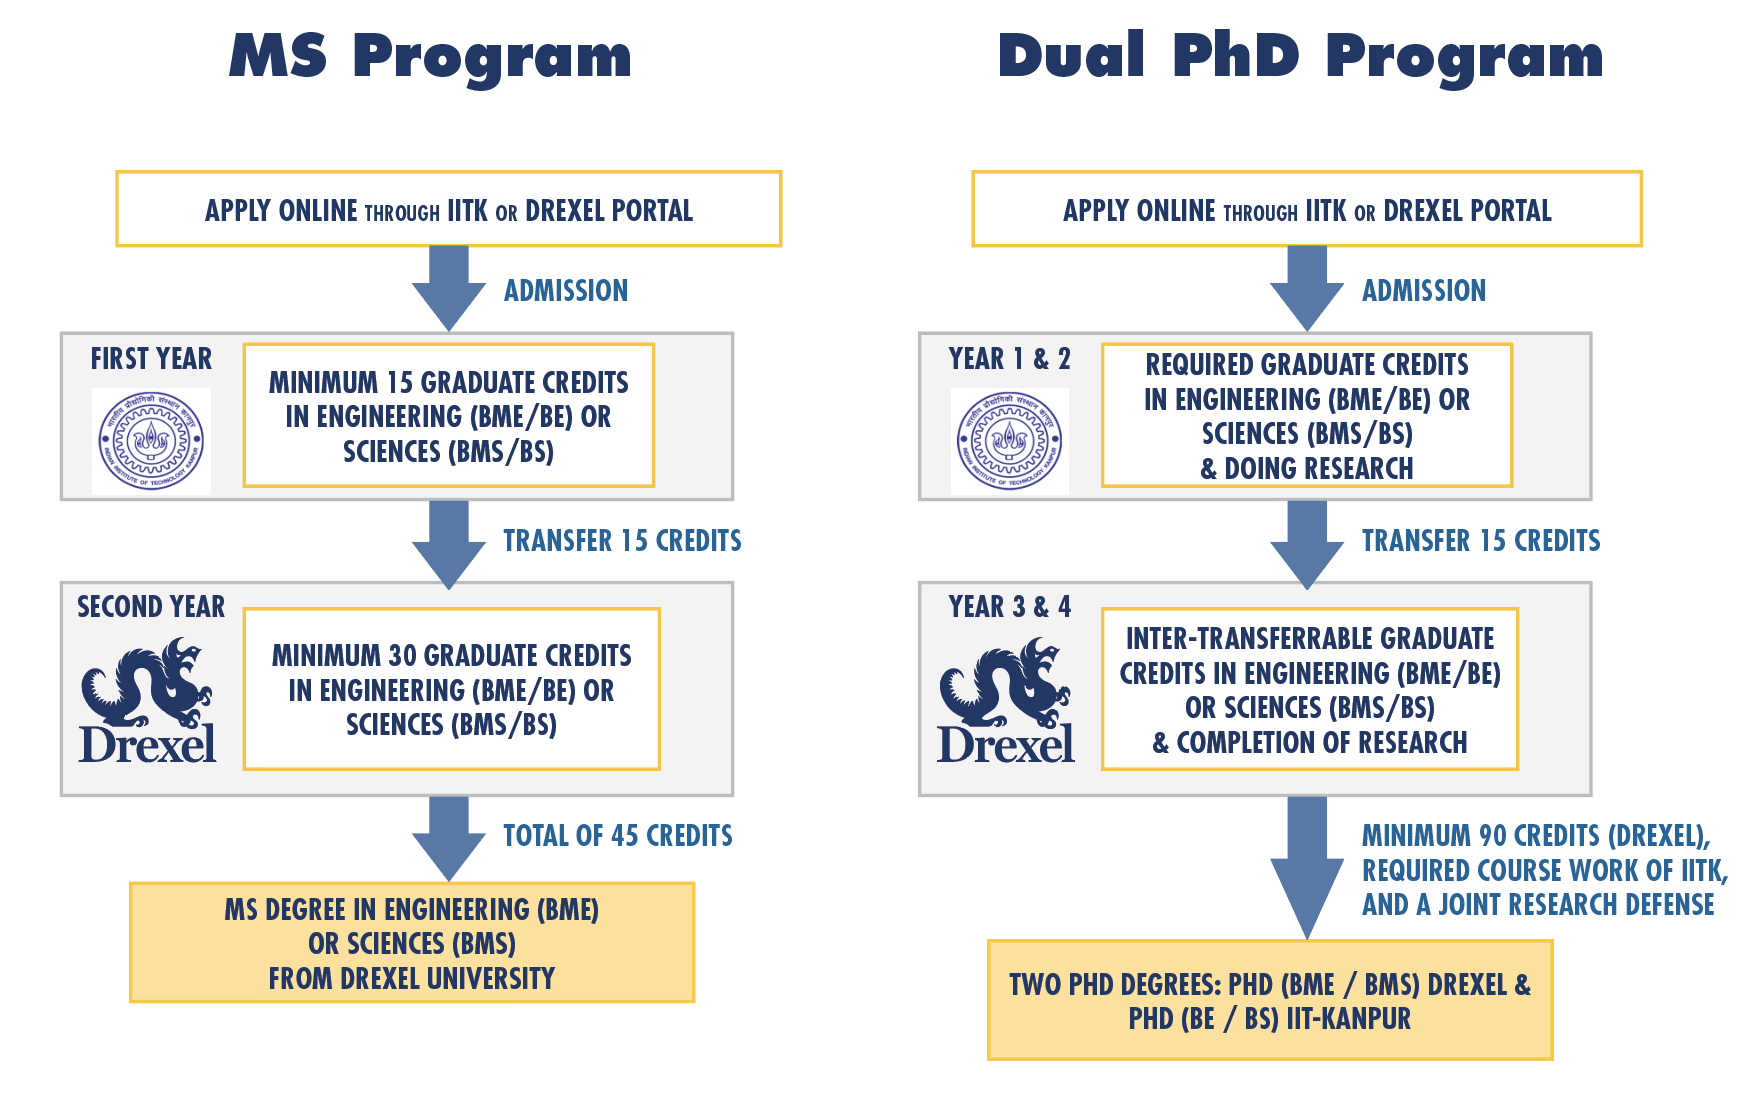 MS & Dual PhD Program